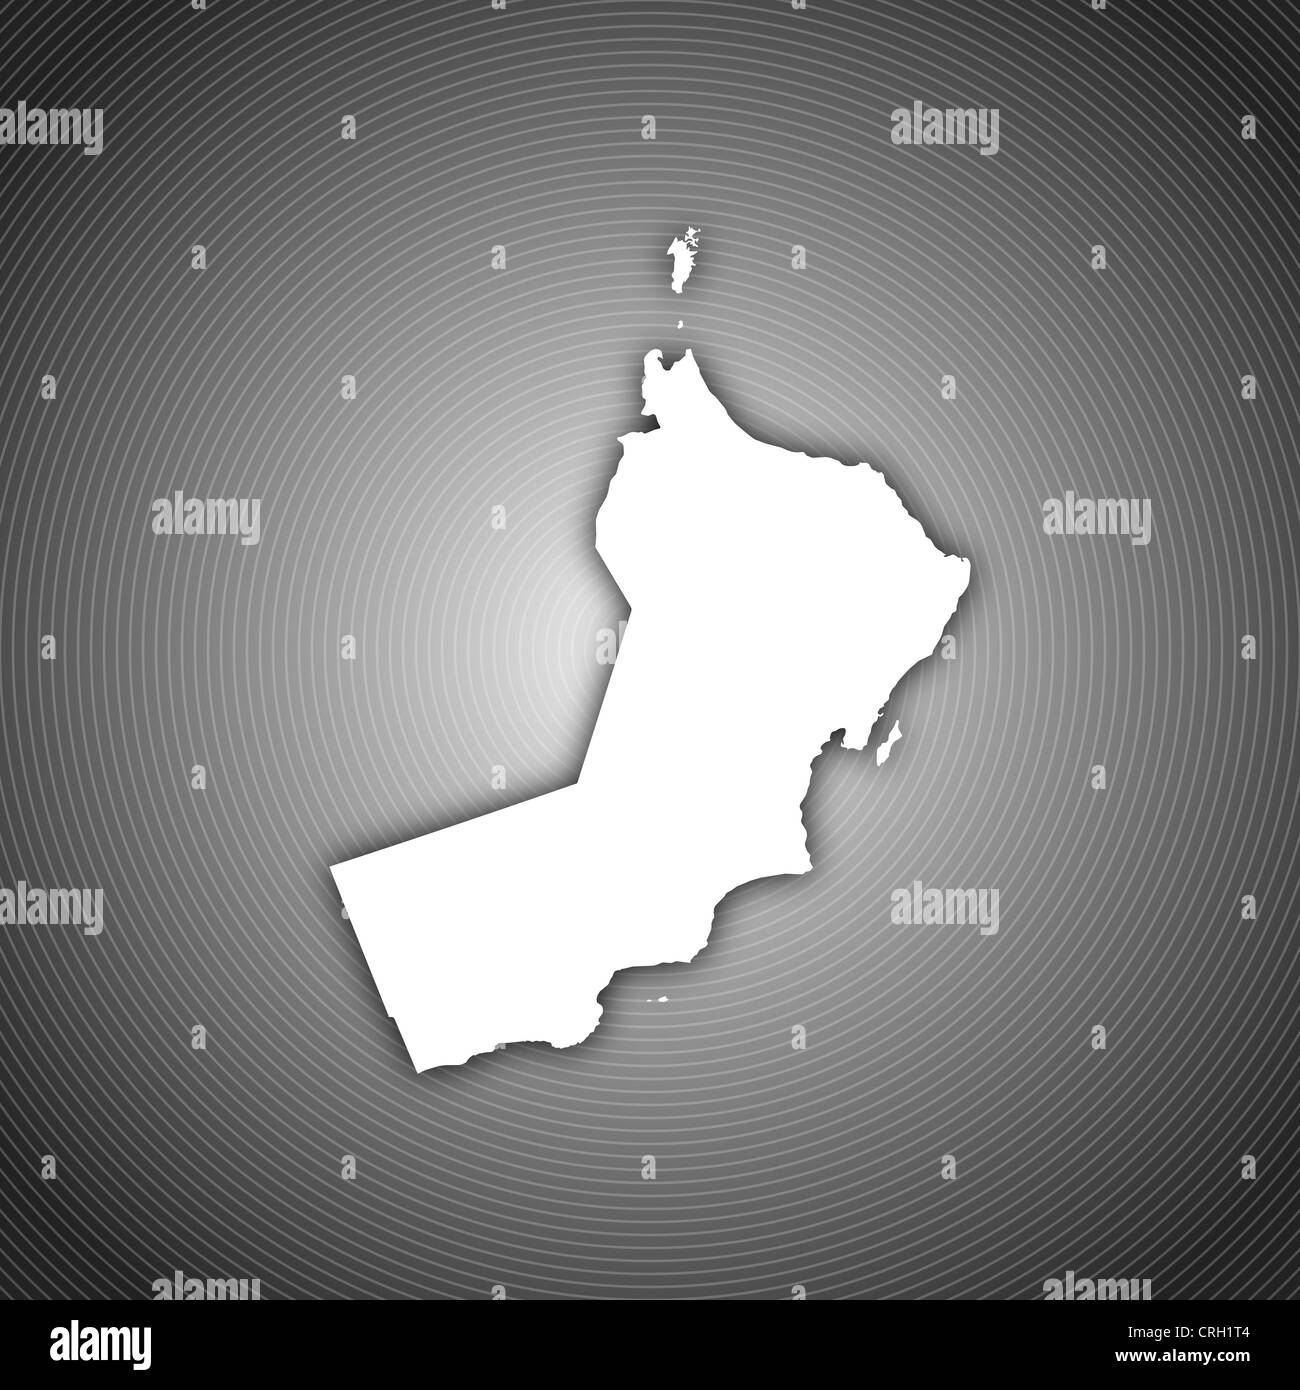 Mappa Politico di Oman con le diverse regioni e governorats. Foto Stock